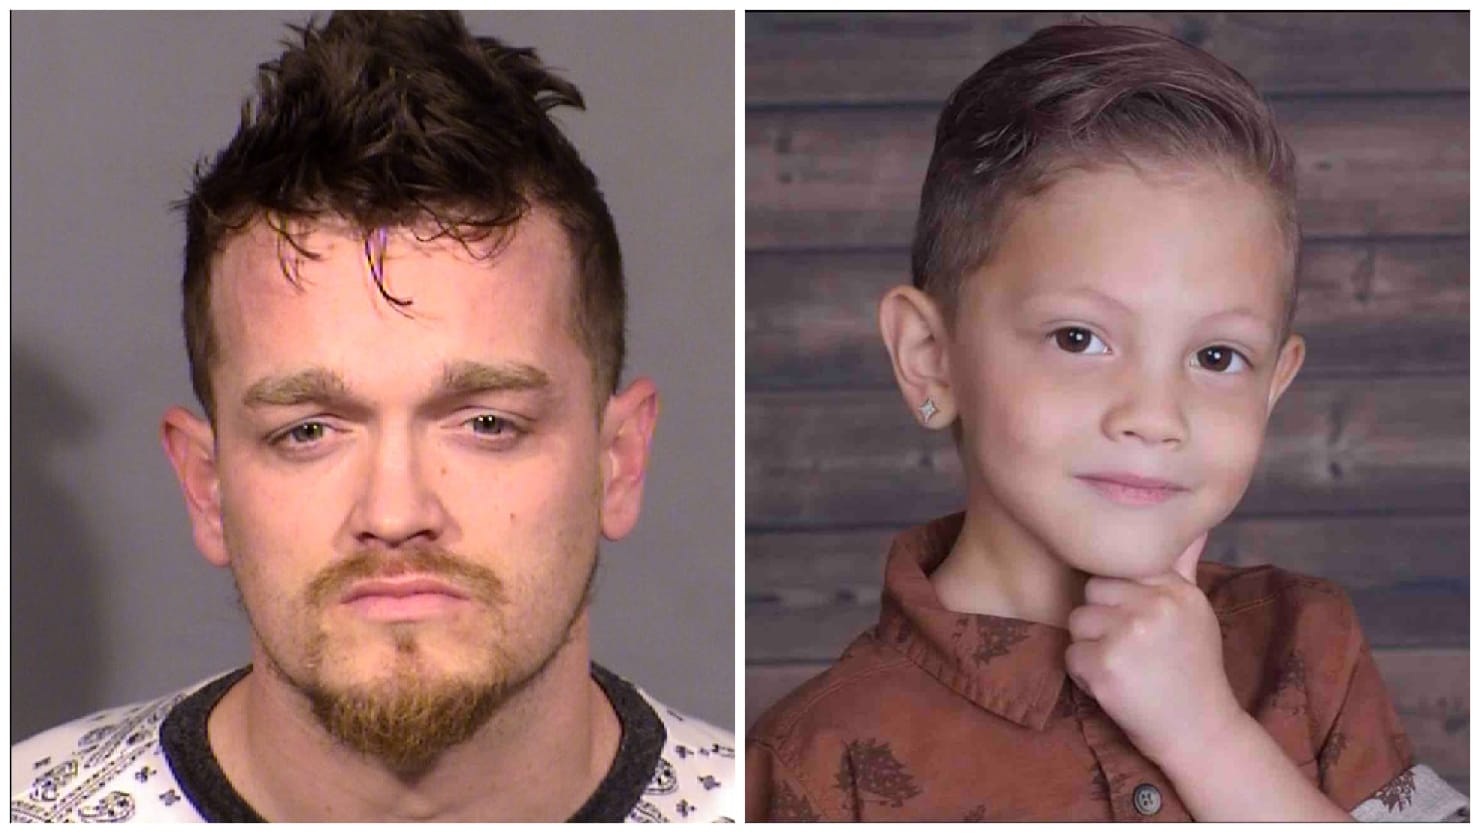 Cómo dicen los policías que un niño de 4 años terminó muerto en un congelador de Las Vegas